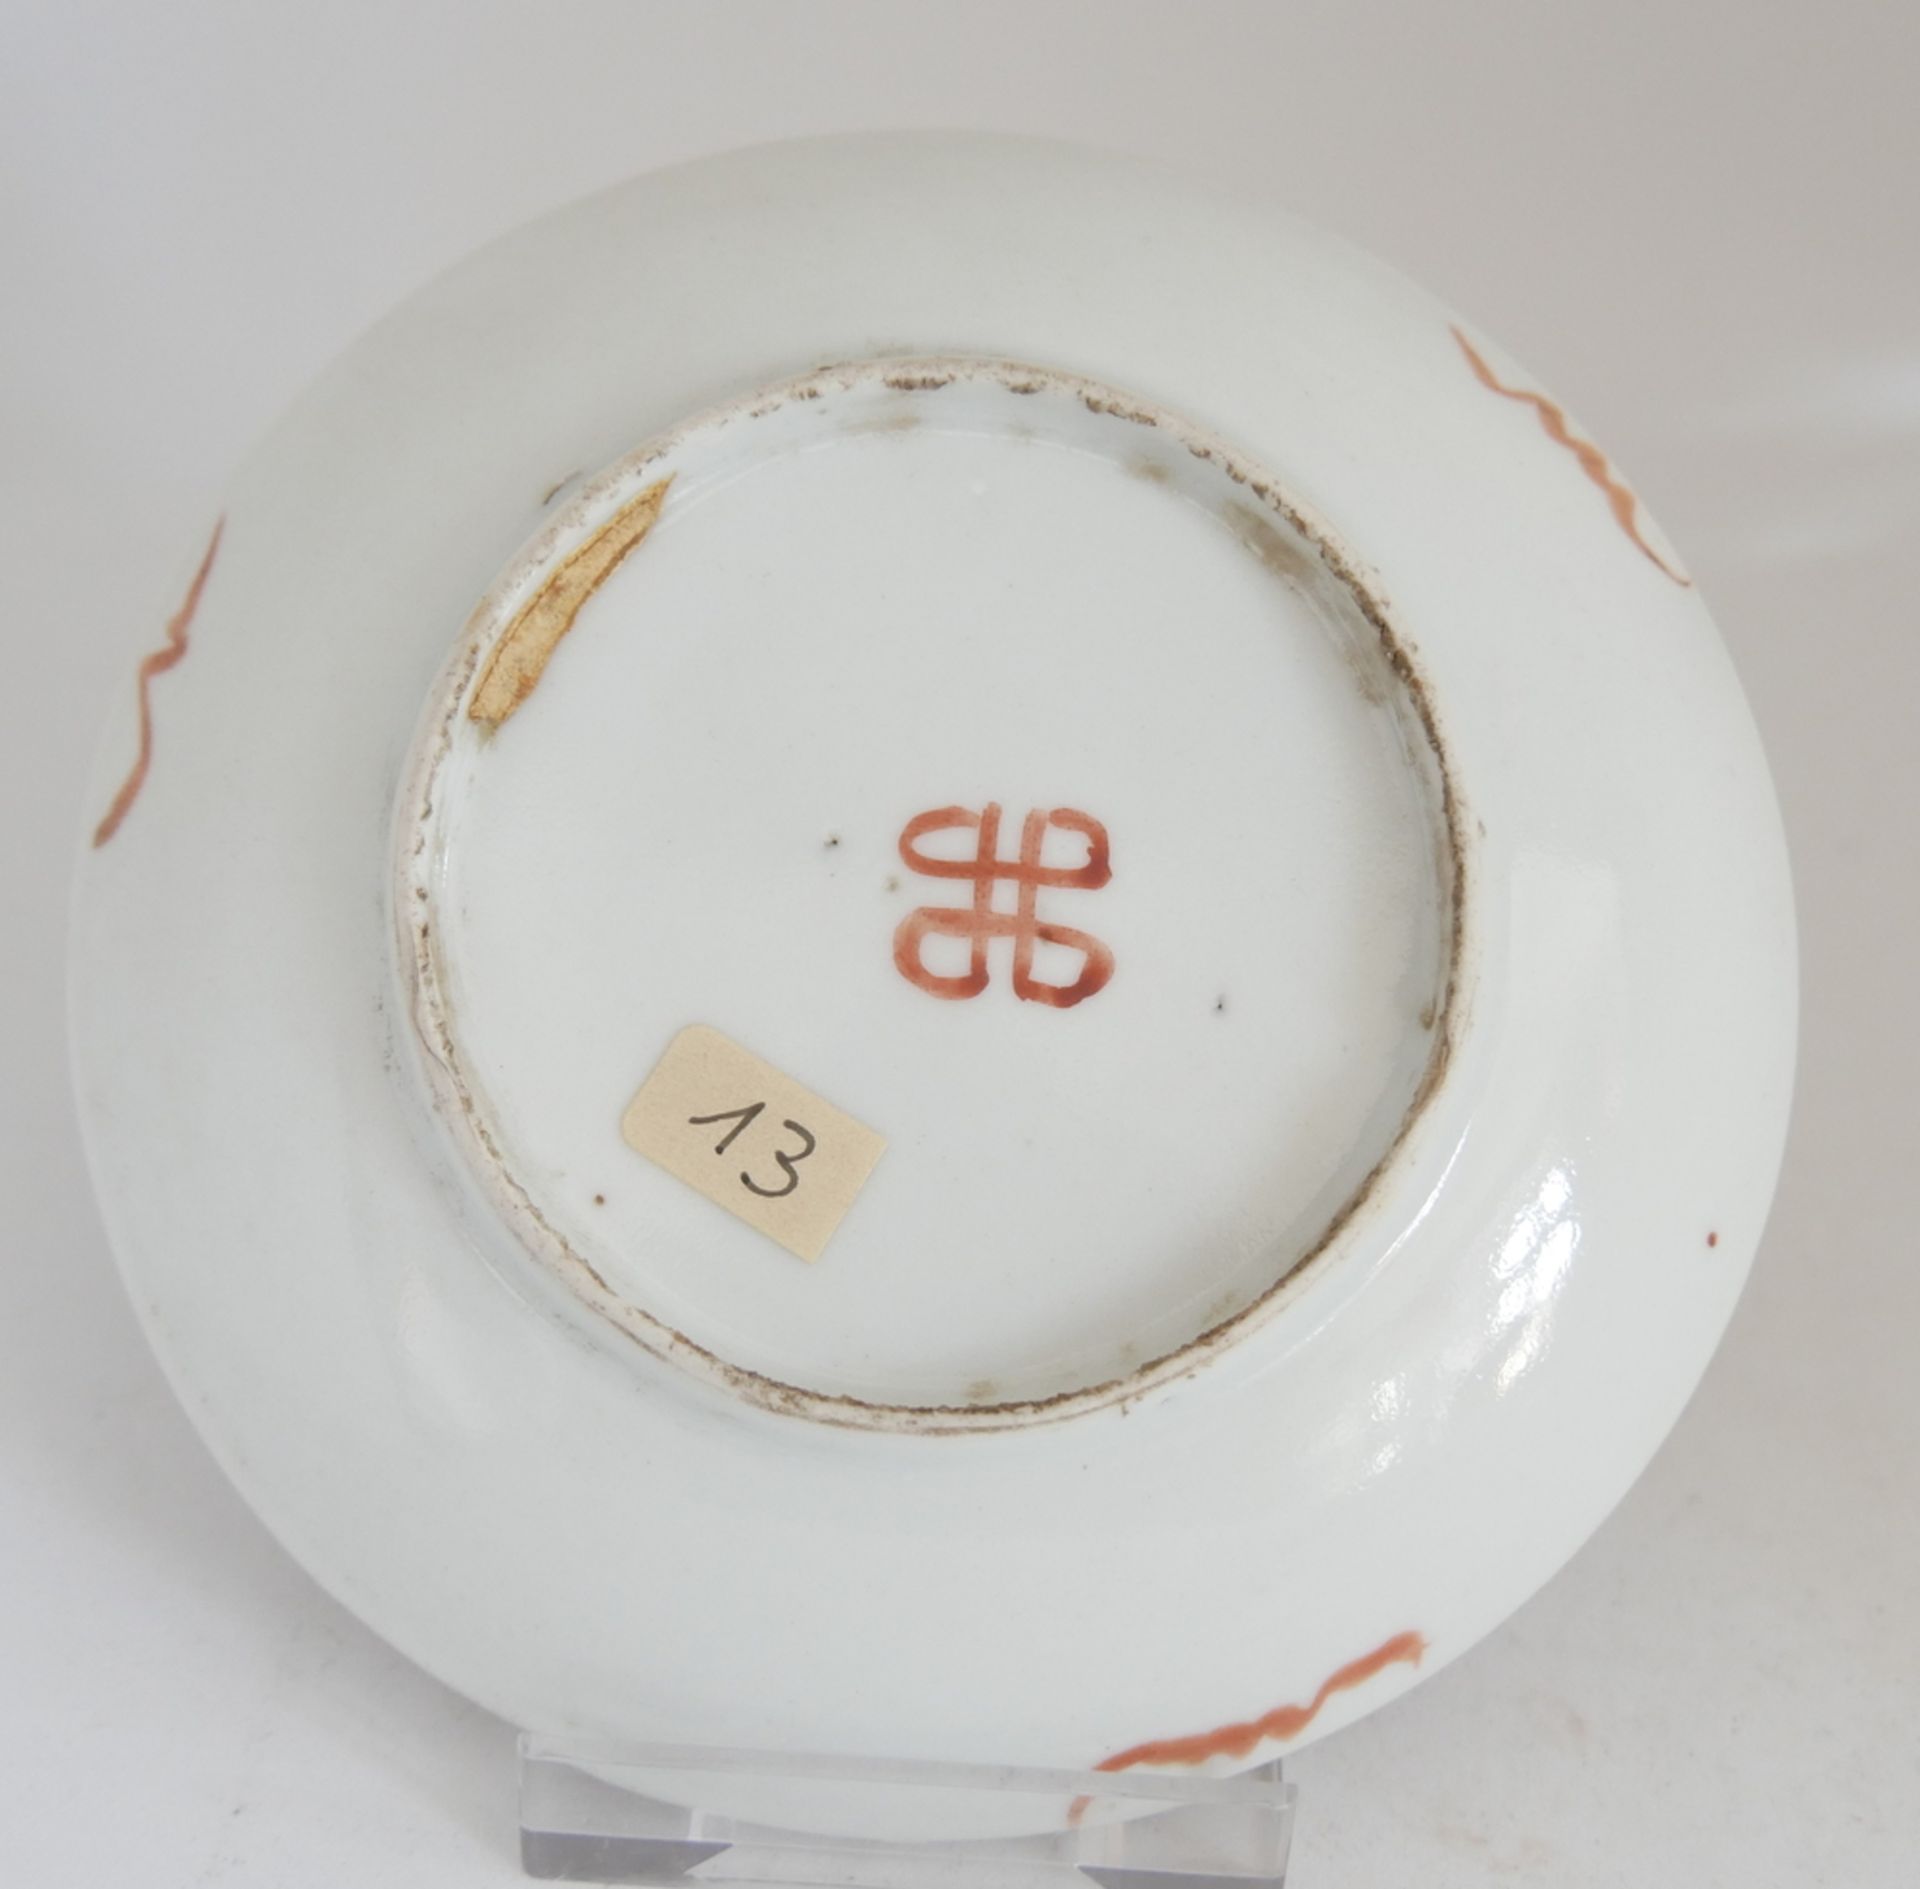 Aus Sammelauflösung! Altes chinesisches Porzellan des 19. Jahrhunderts. Schale mit Emailfarben, - Image 2 of 2